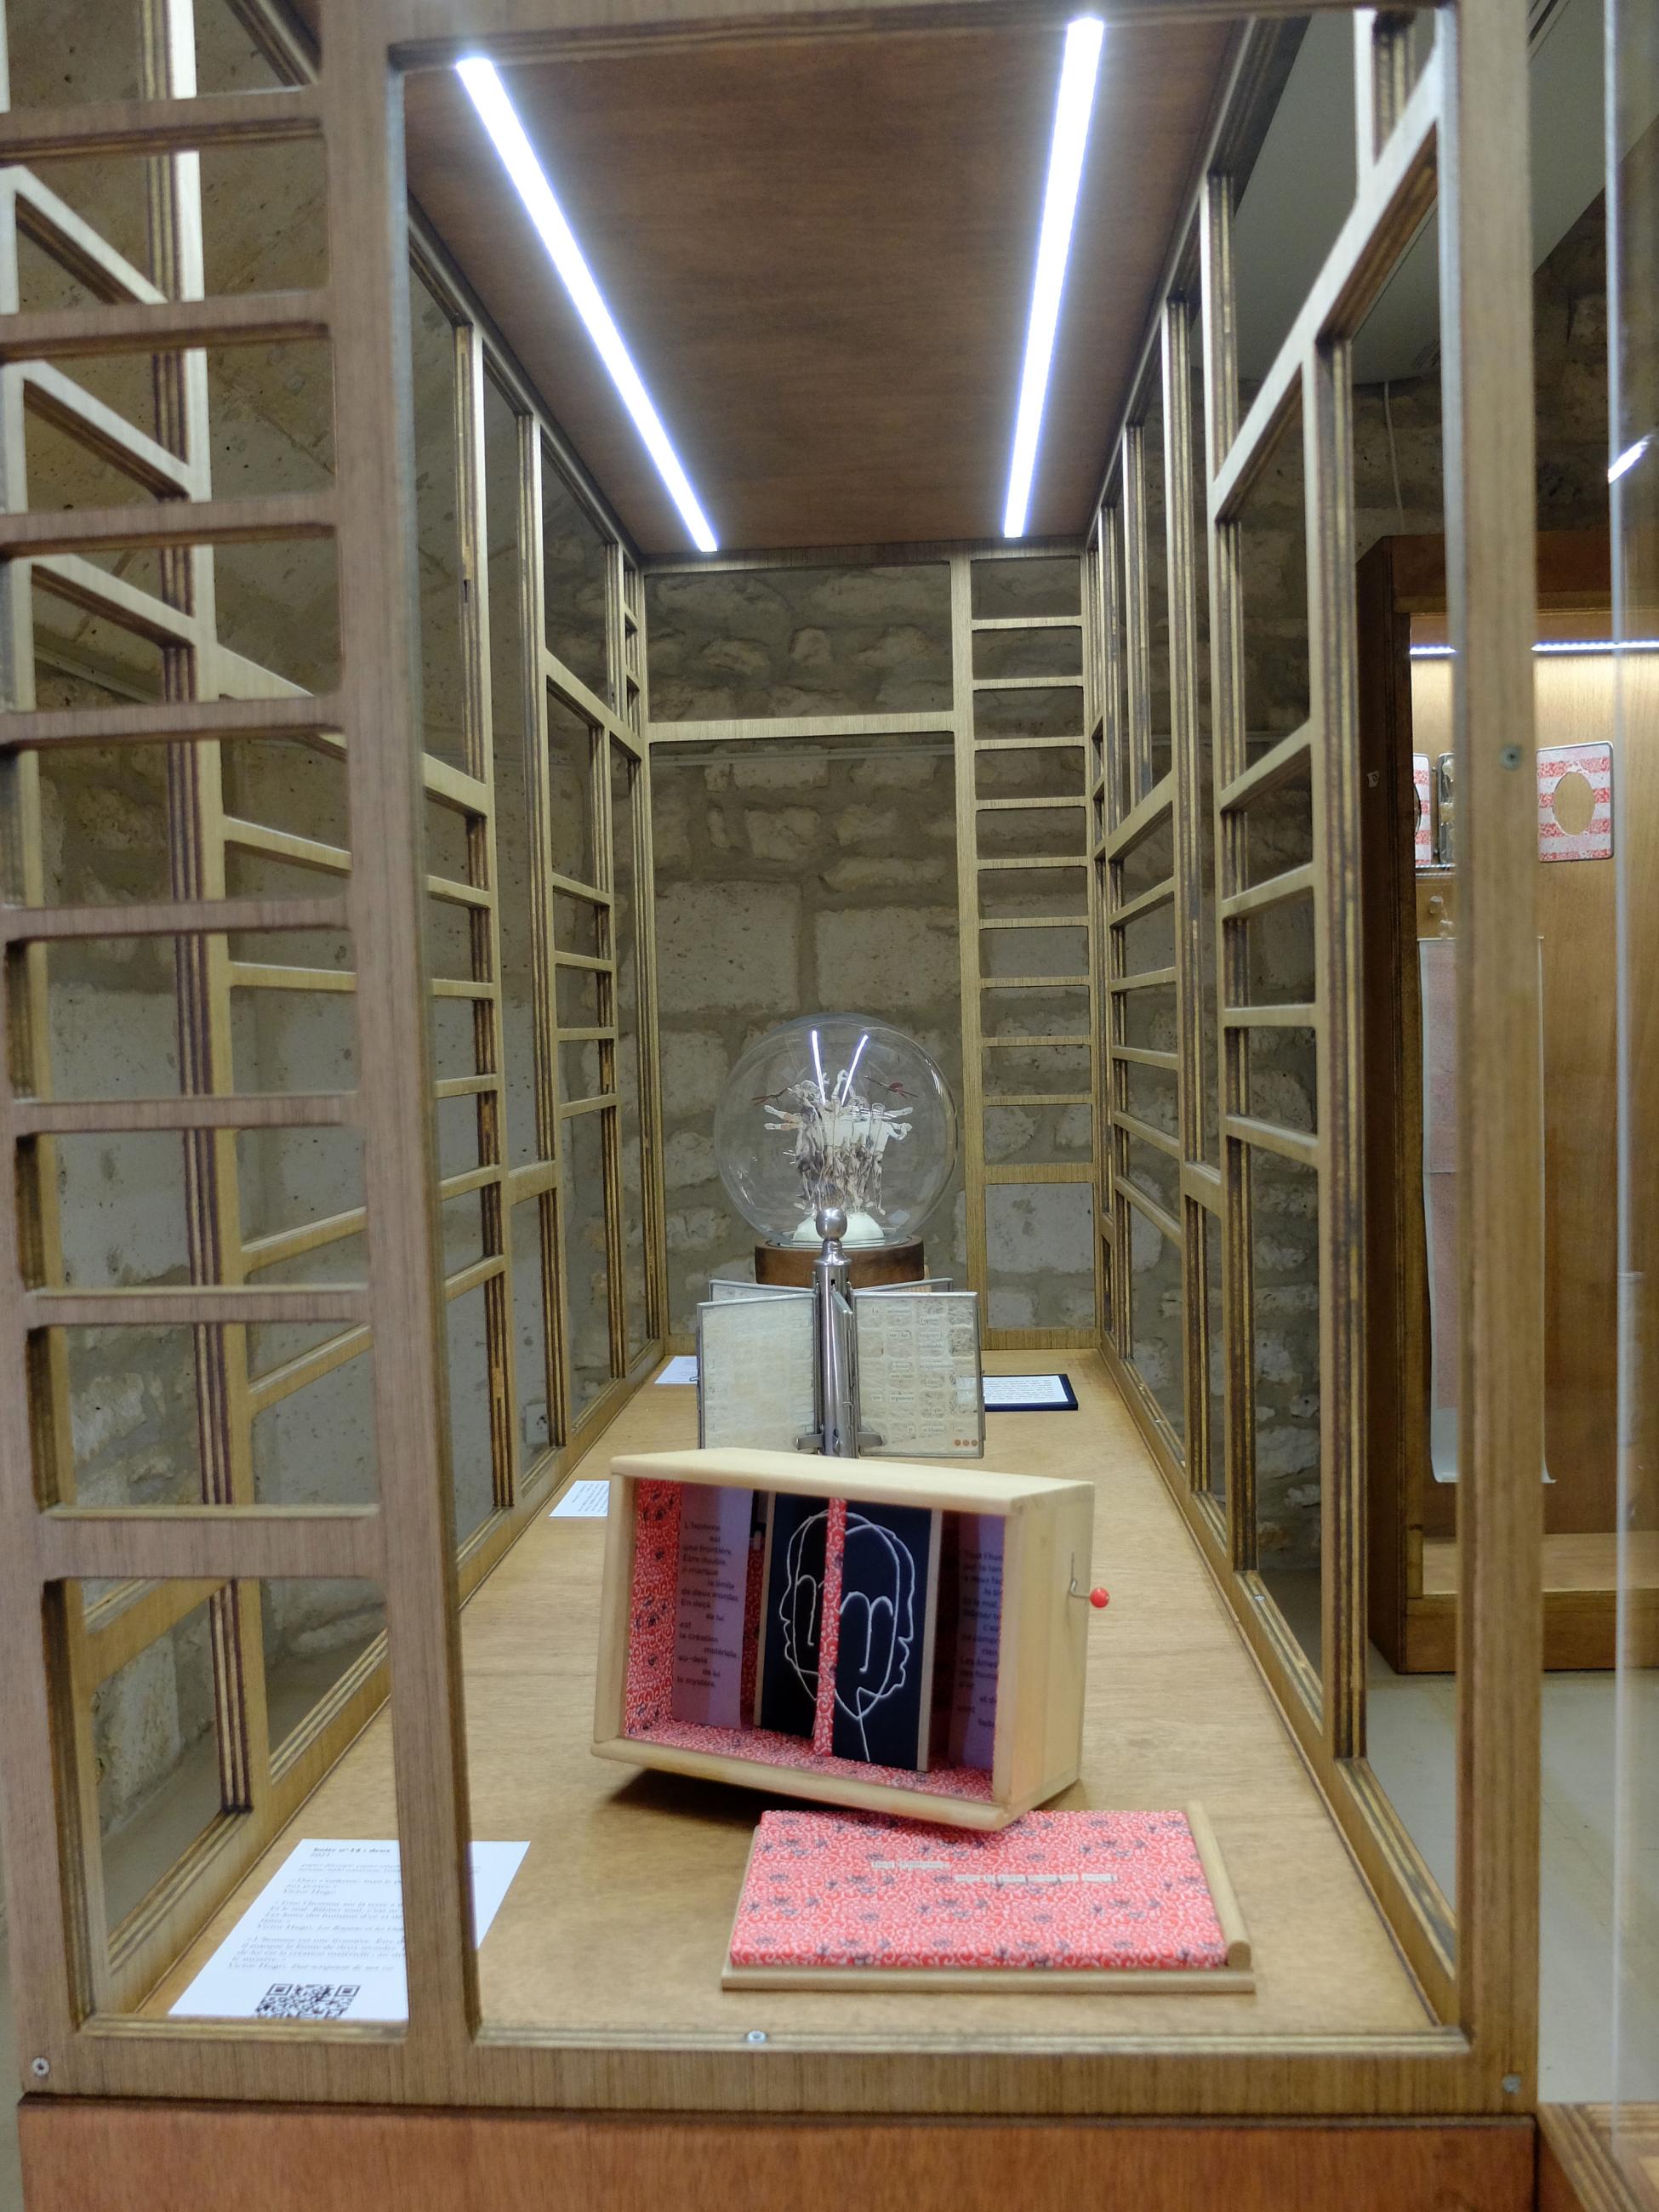 Installation de l'exposition de Juliette Solvès à Angoulême